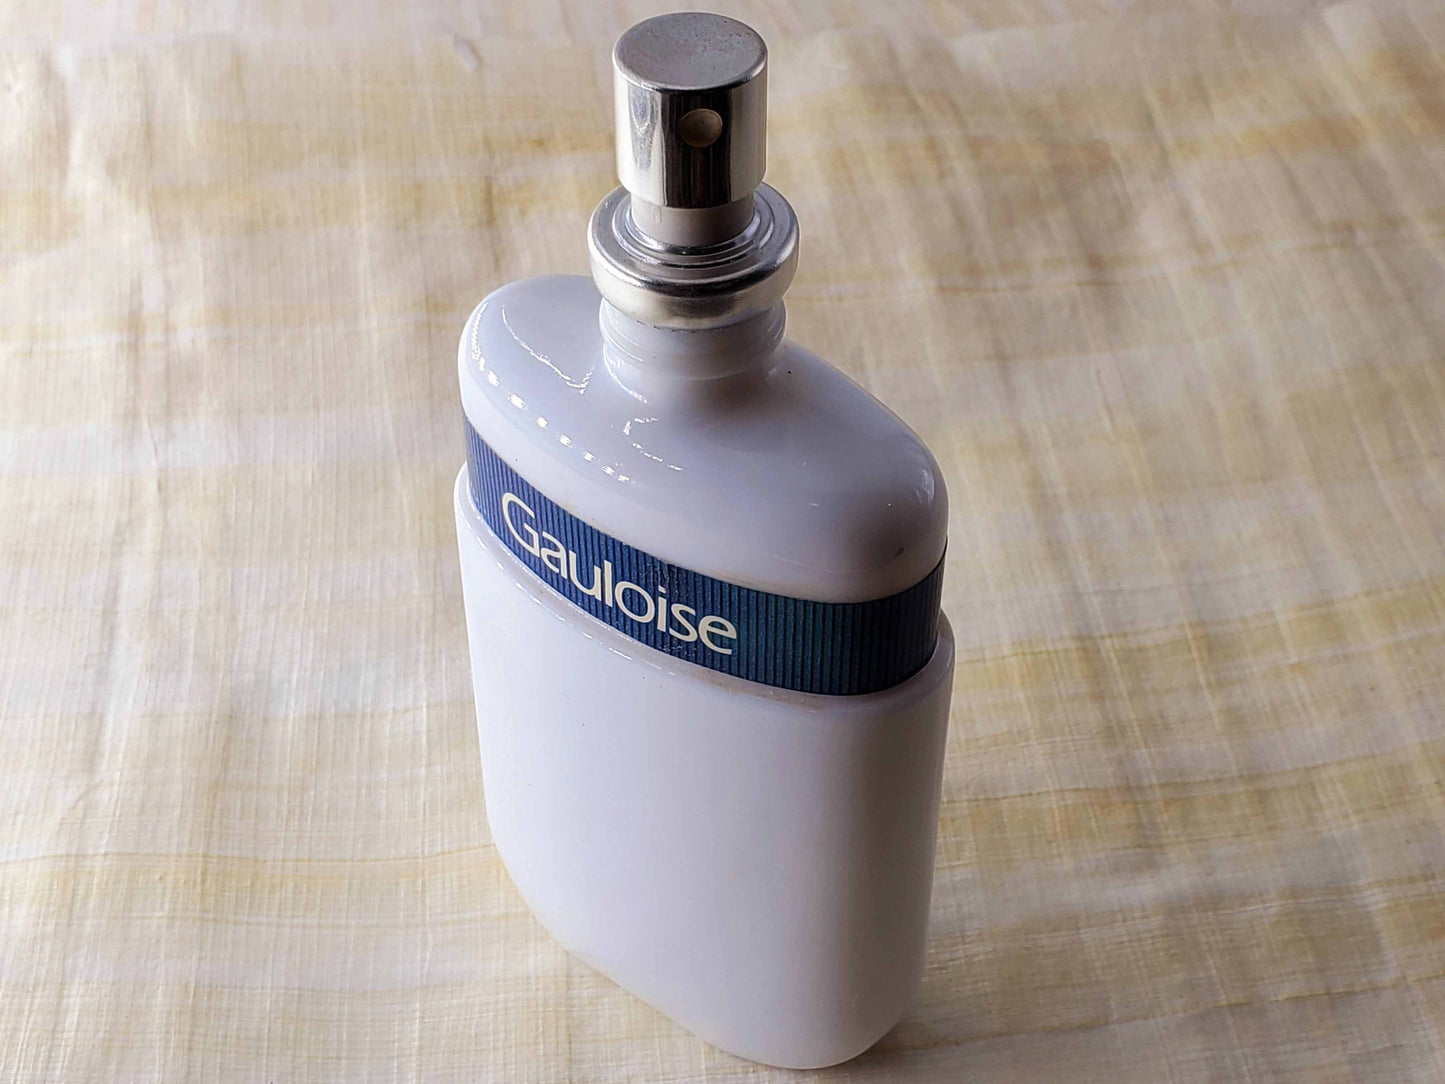 TESTER Gauloise Molyneux for women EDT Spray 100 ml 3.4 oz, Rare, Vintage, Same pic